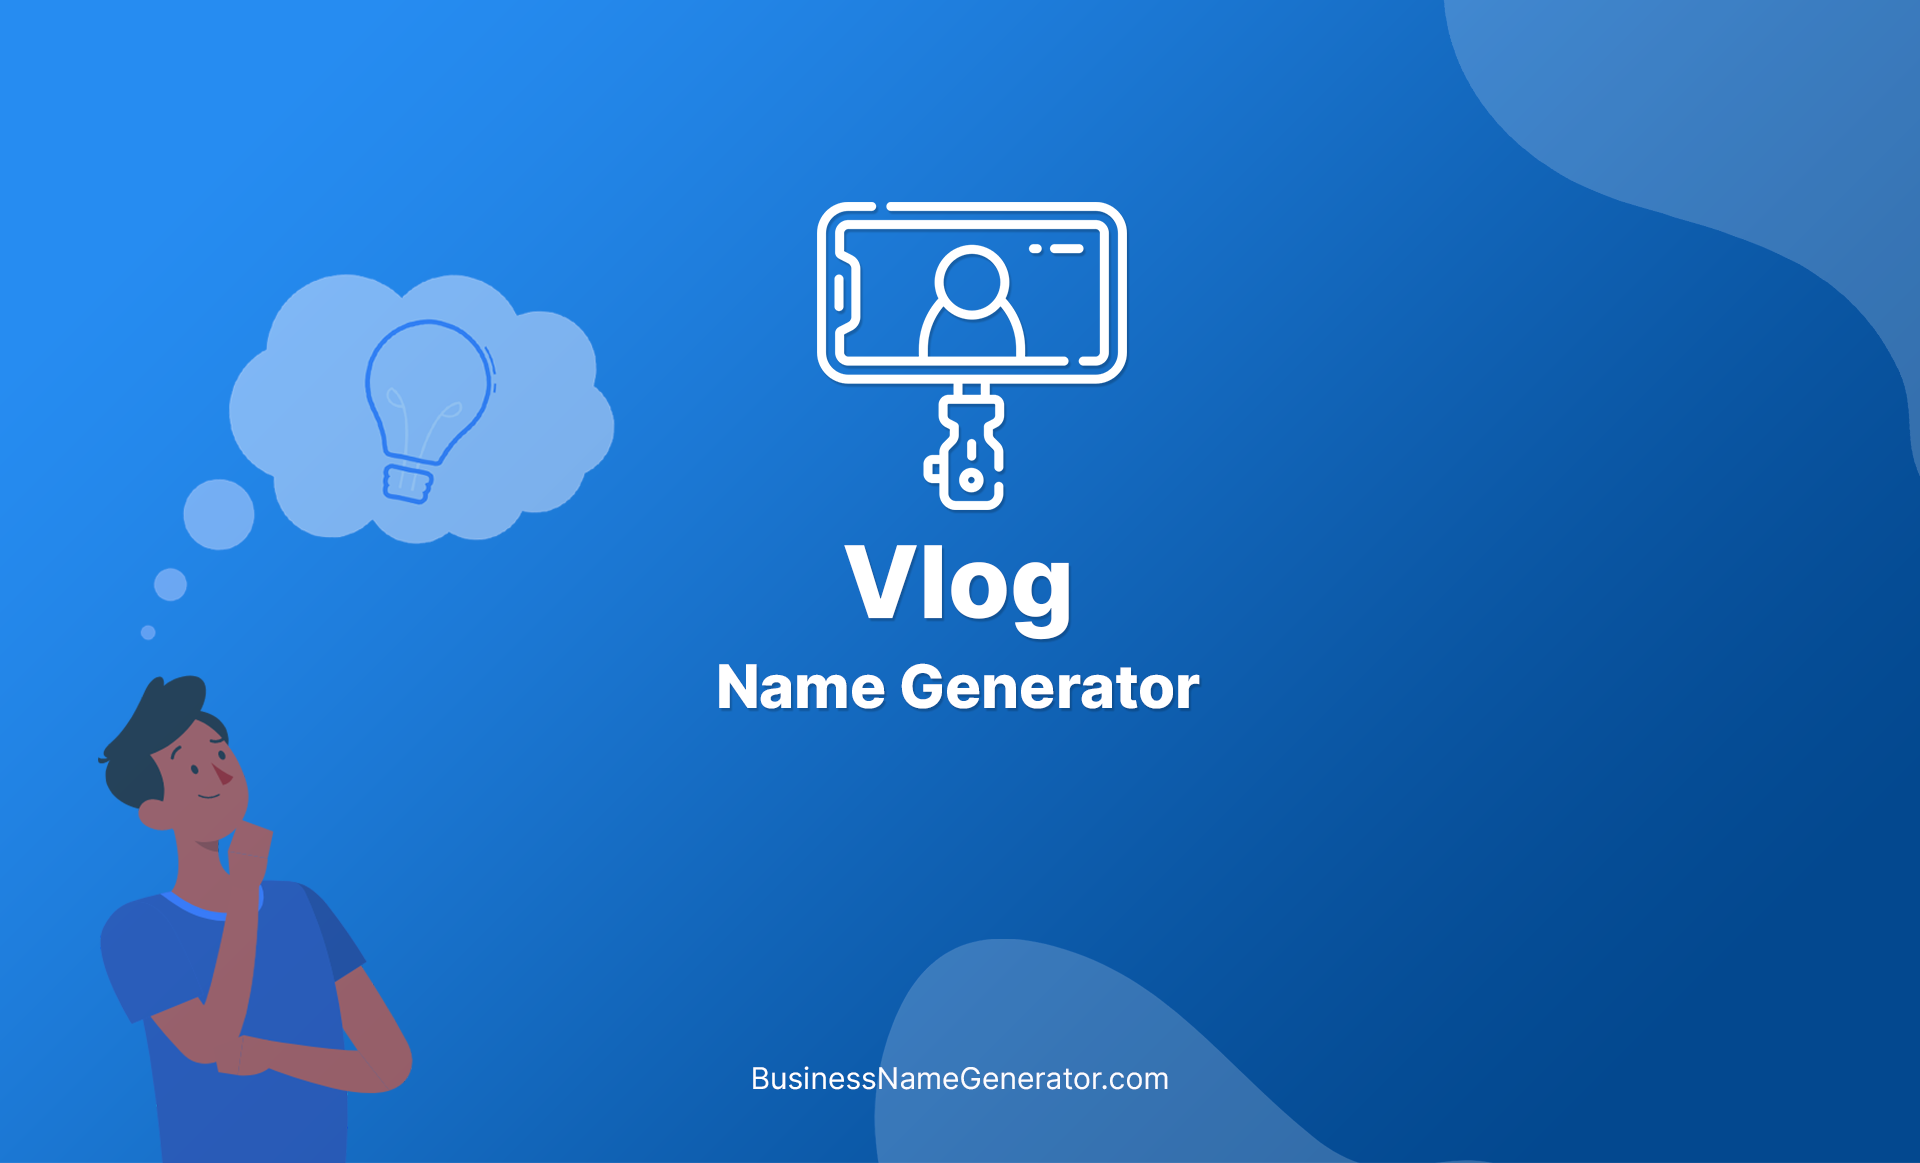 Vlog Name Generator